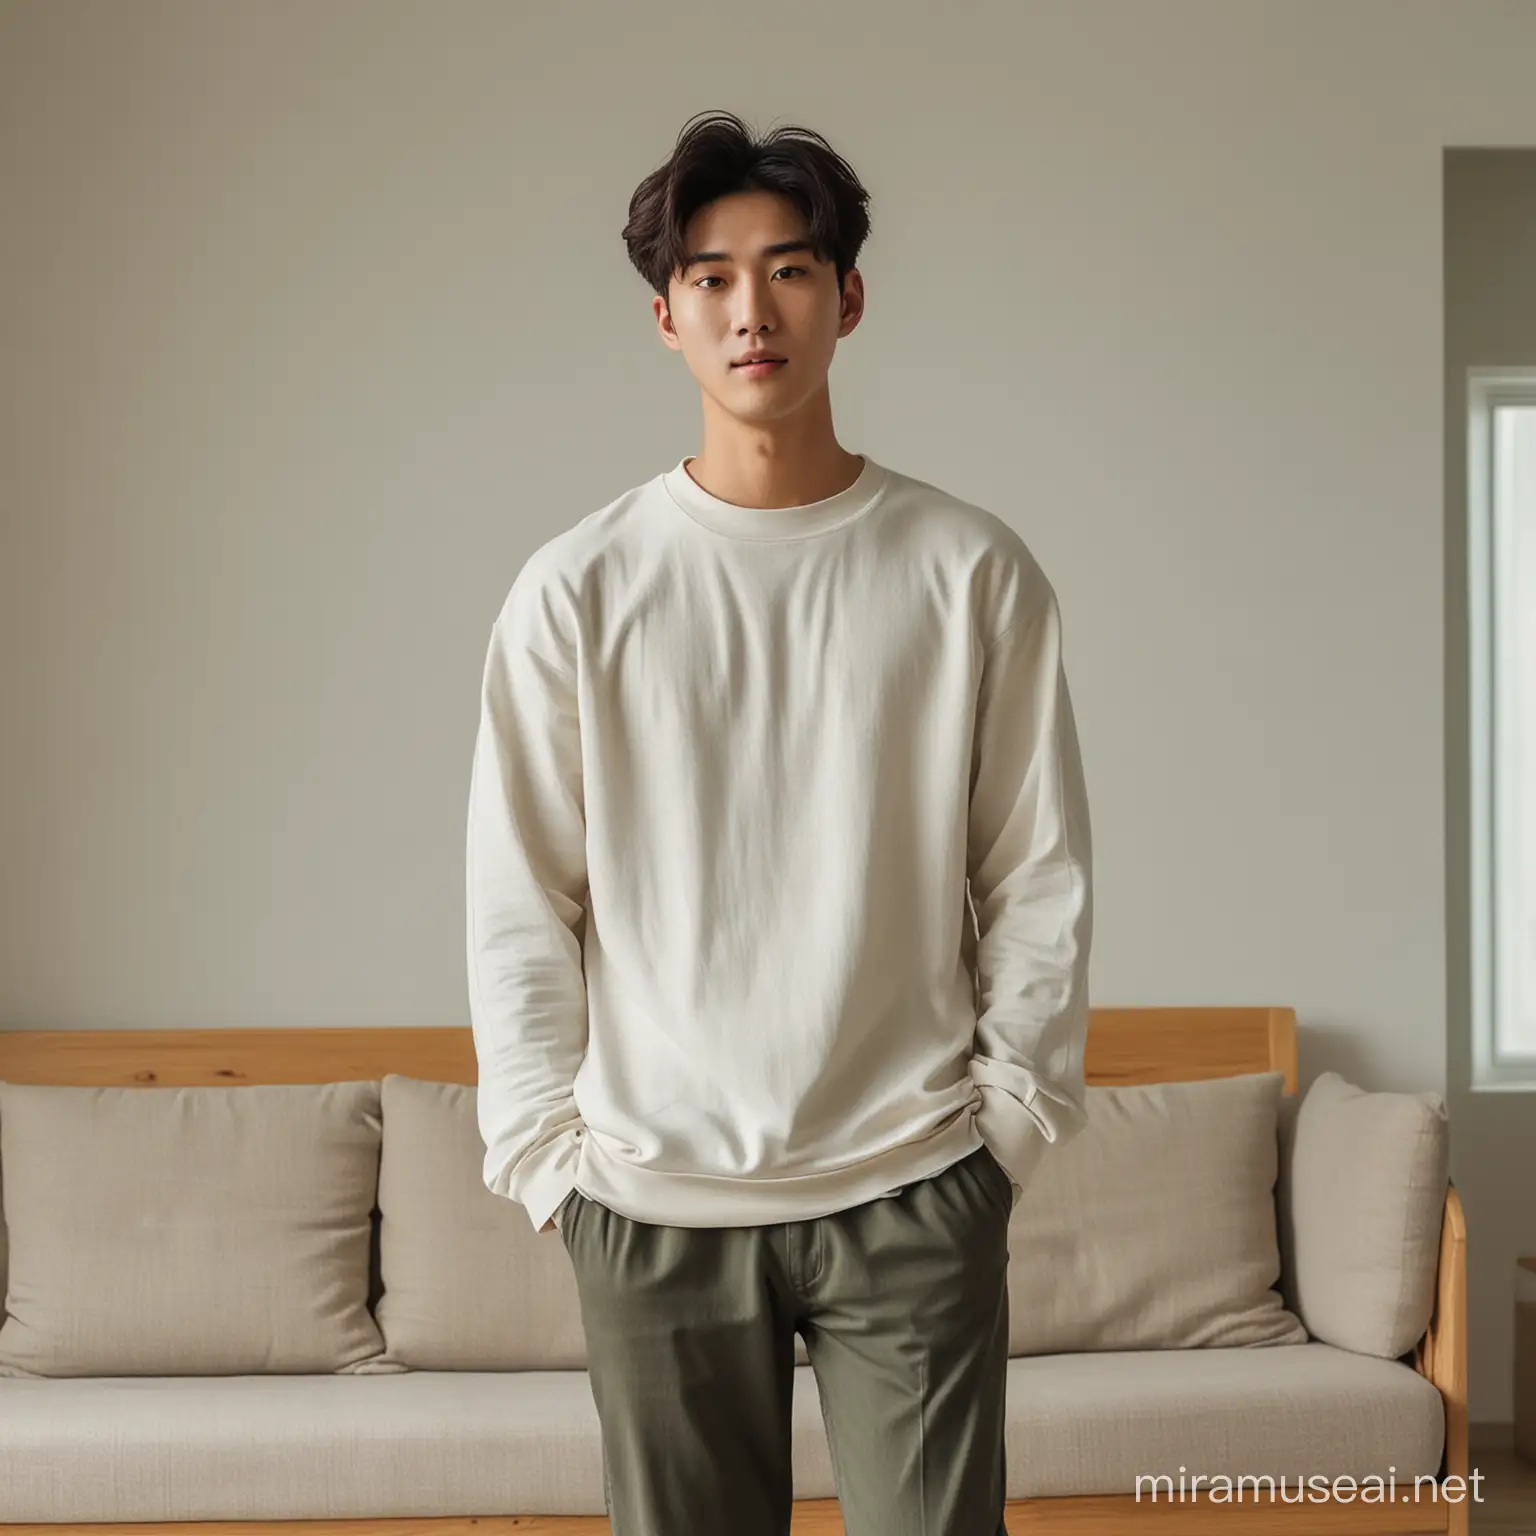 Seorang pria muda korea sedang berada didalam rumah memakai baju indoor casual.